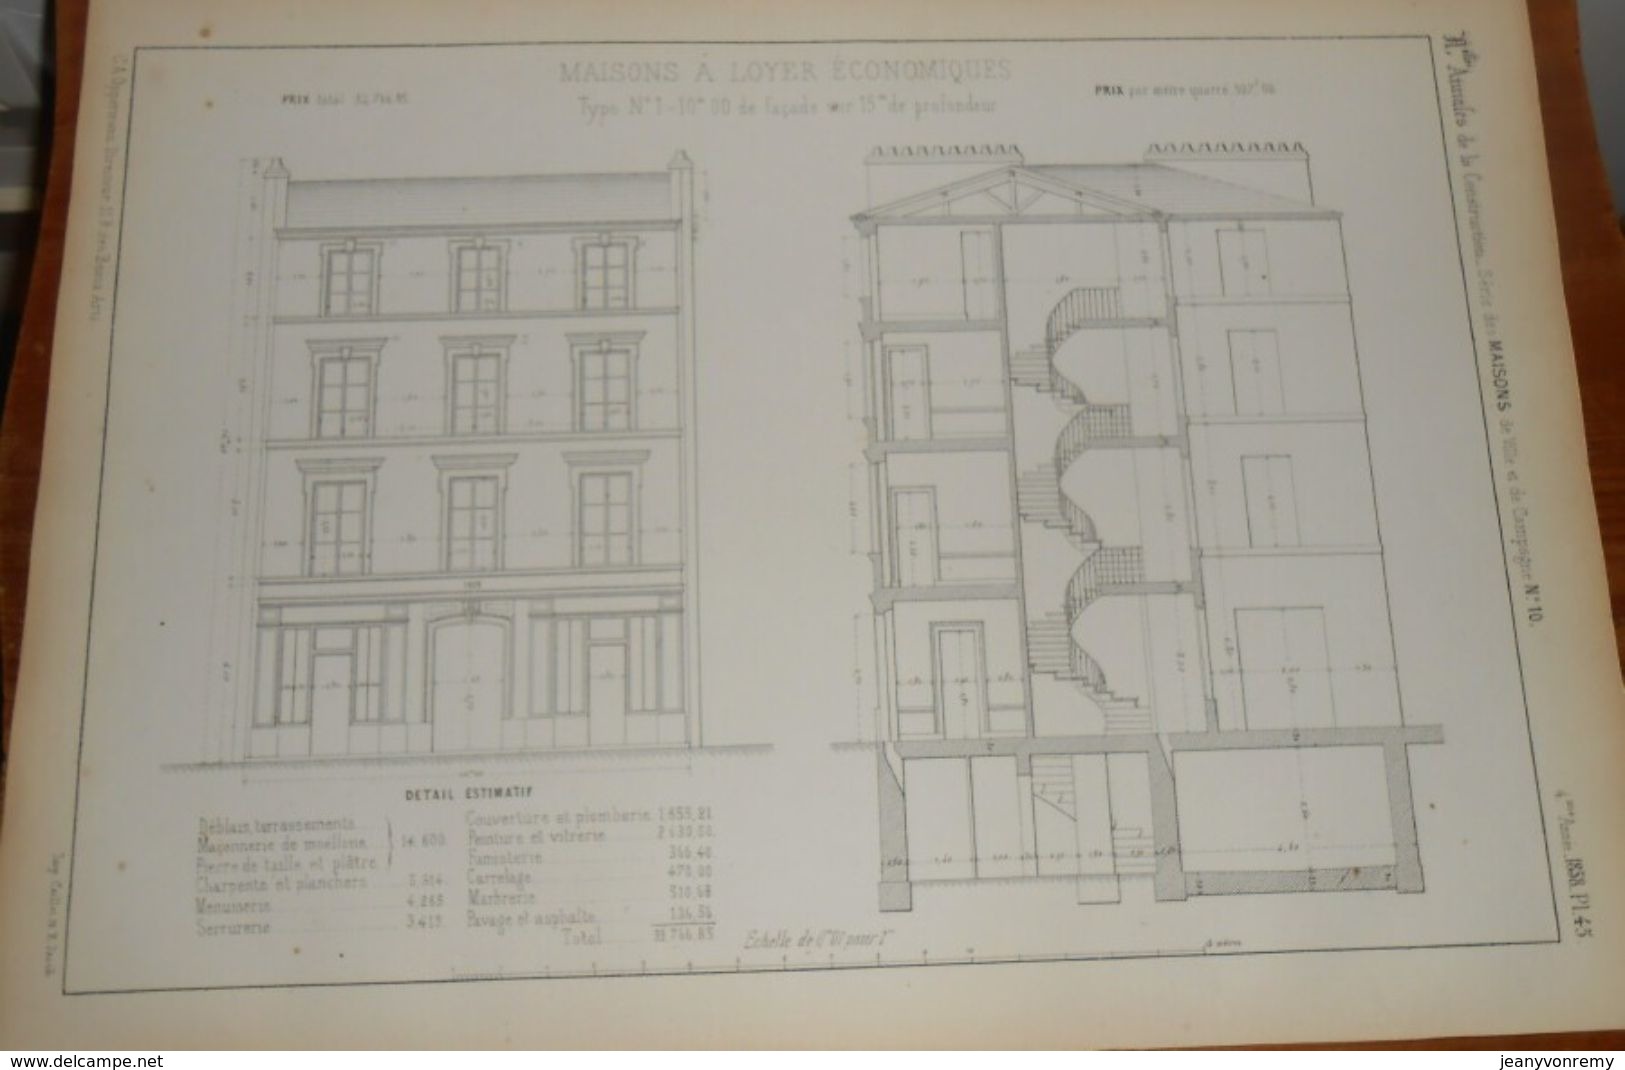 Plan De Maison à Loyer économique. 1858 - Travaux Publics